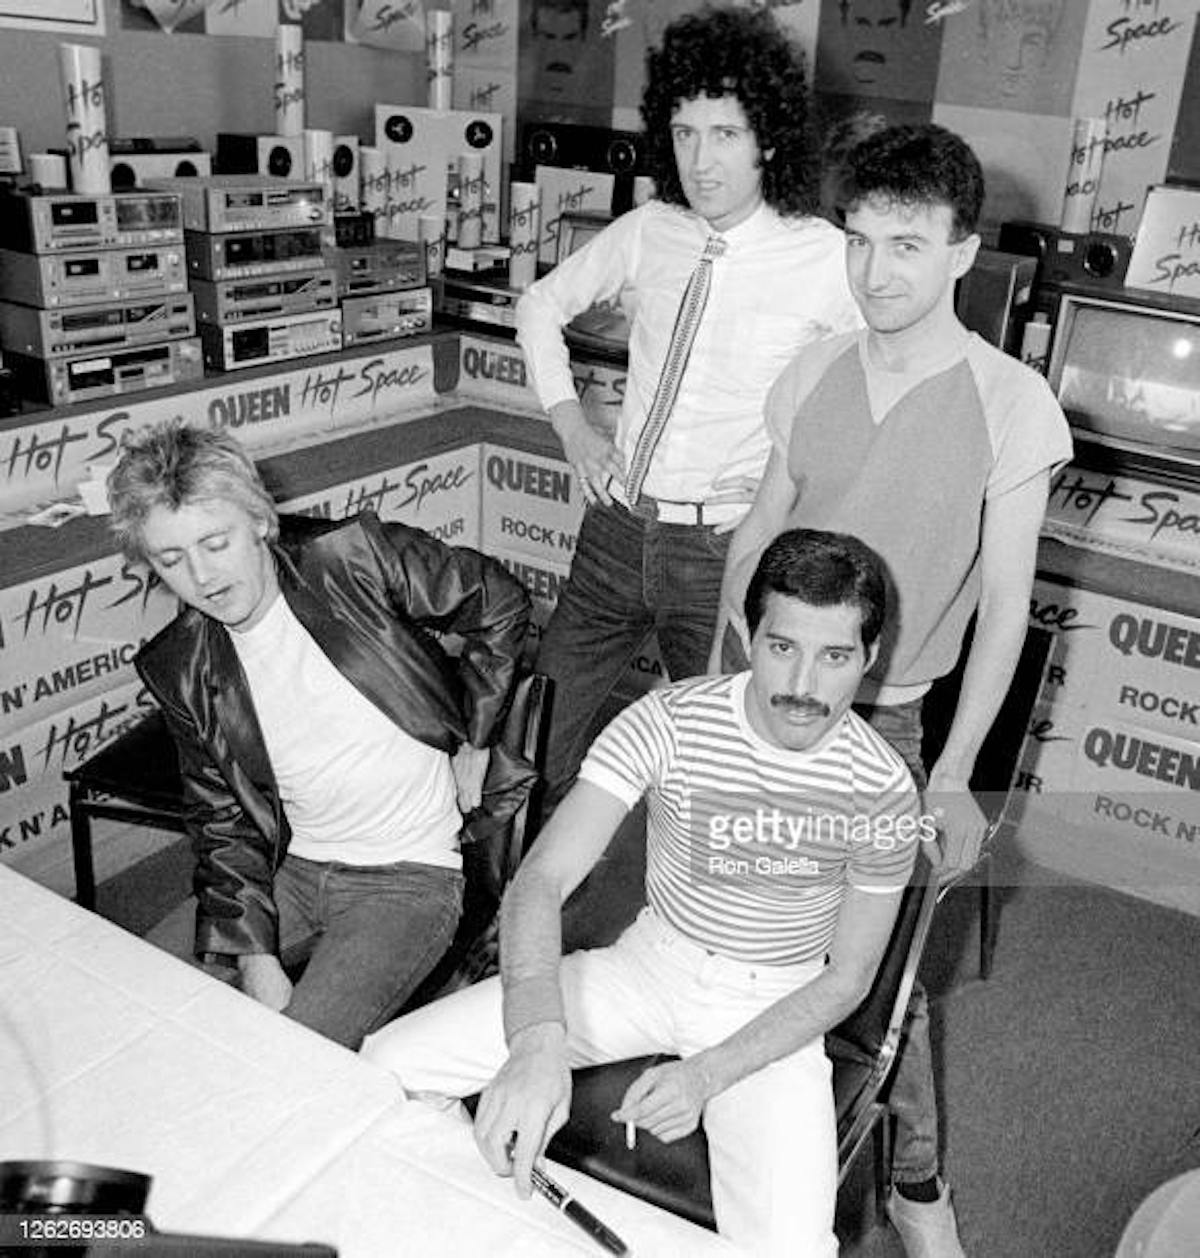 Roger Taylor, Brian May, John Deacon et Freddie Mercury de Queen assistent à la soirée d'album "Hot Space" au Crazy Eddie's à New York le 27 juillet 1982. (Photo de Ron Galella/Ron Galella Collection via Getty Images)